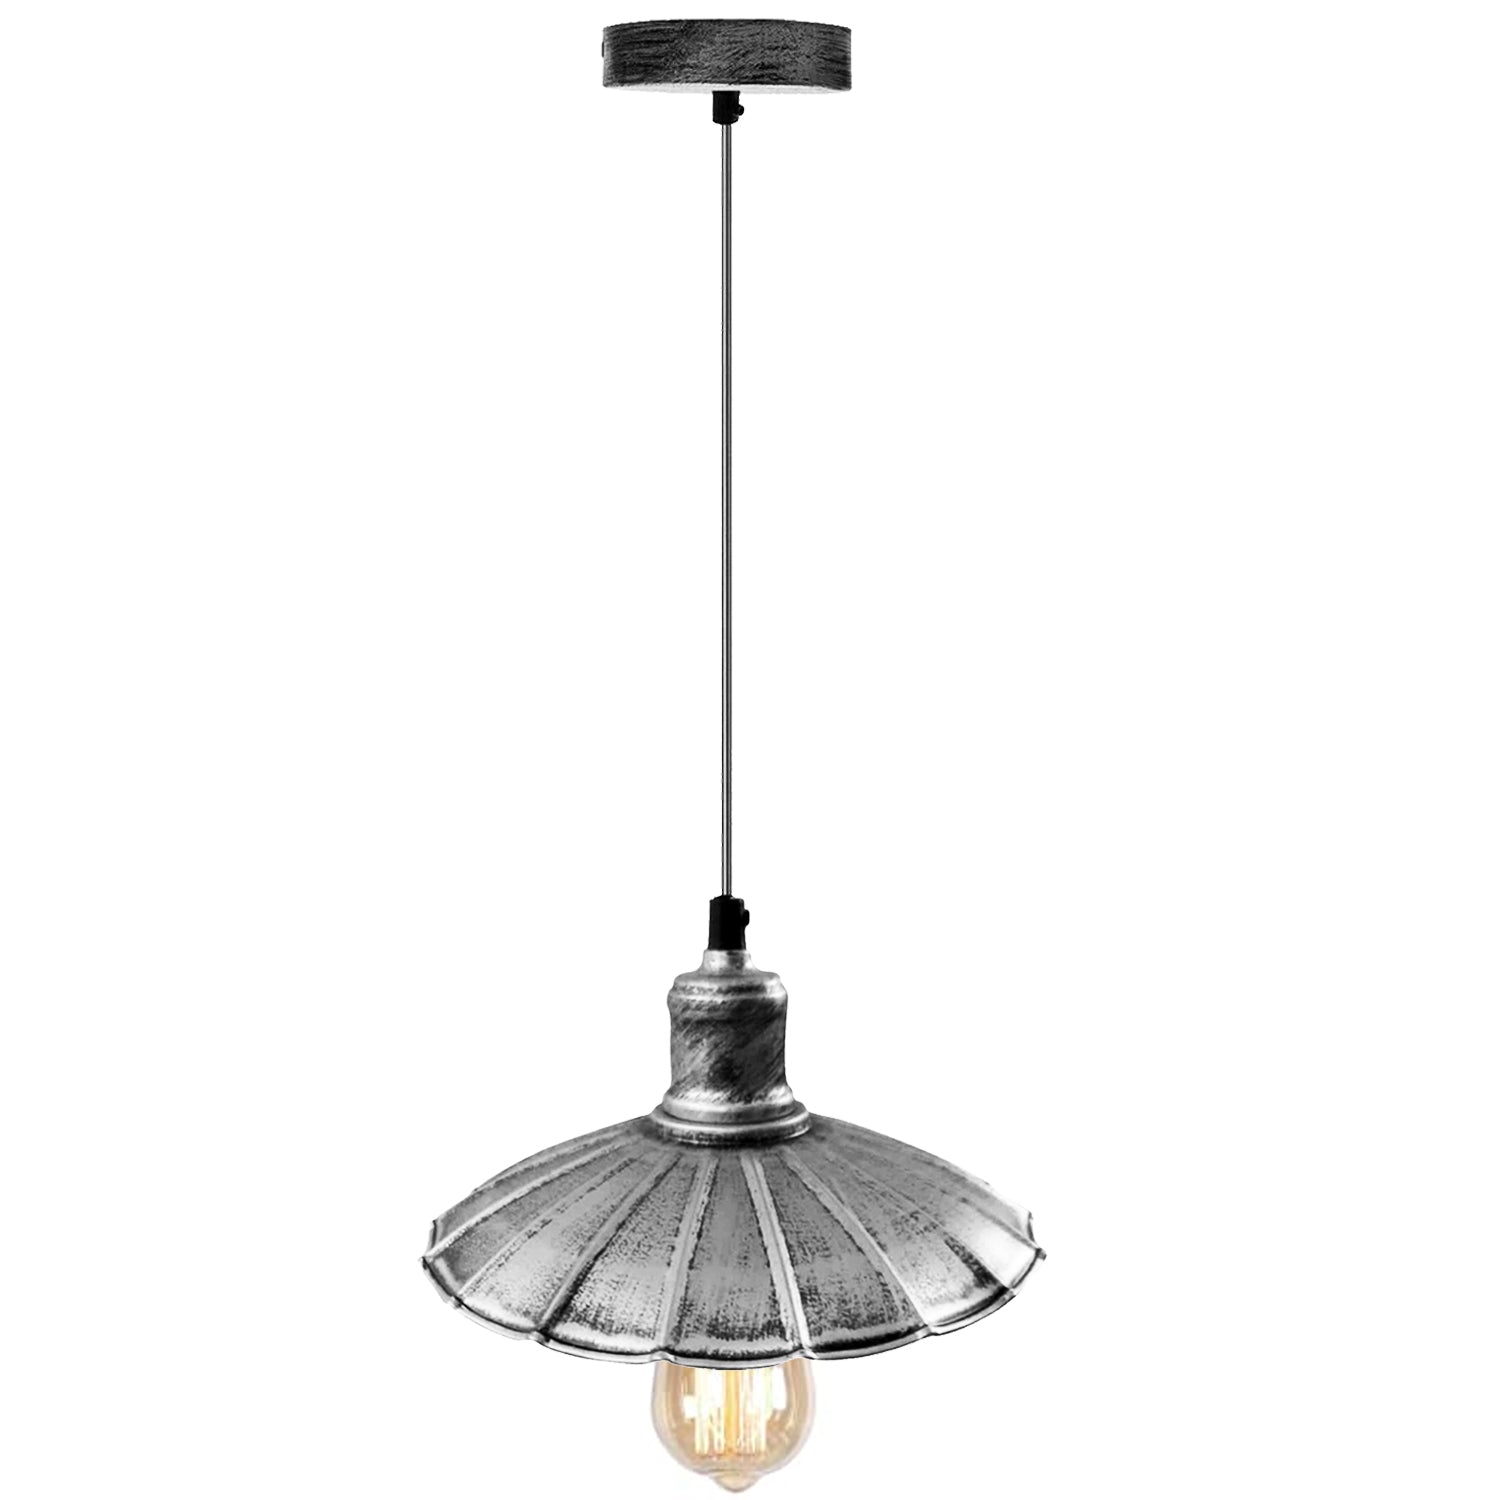 Billede af Børstet sølv industrielt design køkkenlampe E27 pendel retro pendel lampearmatur